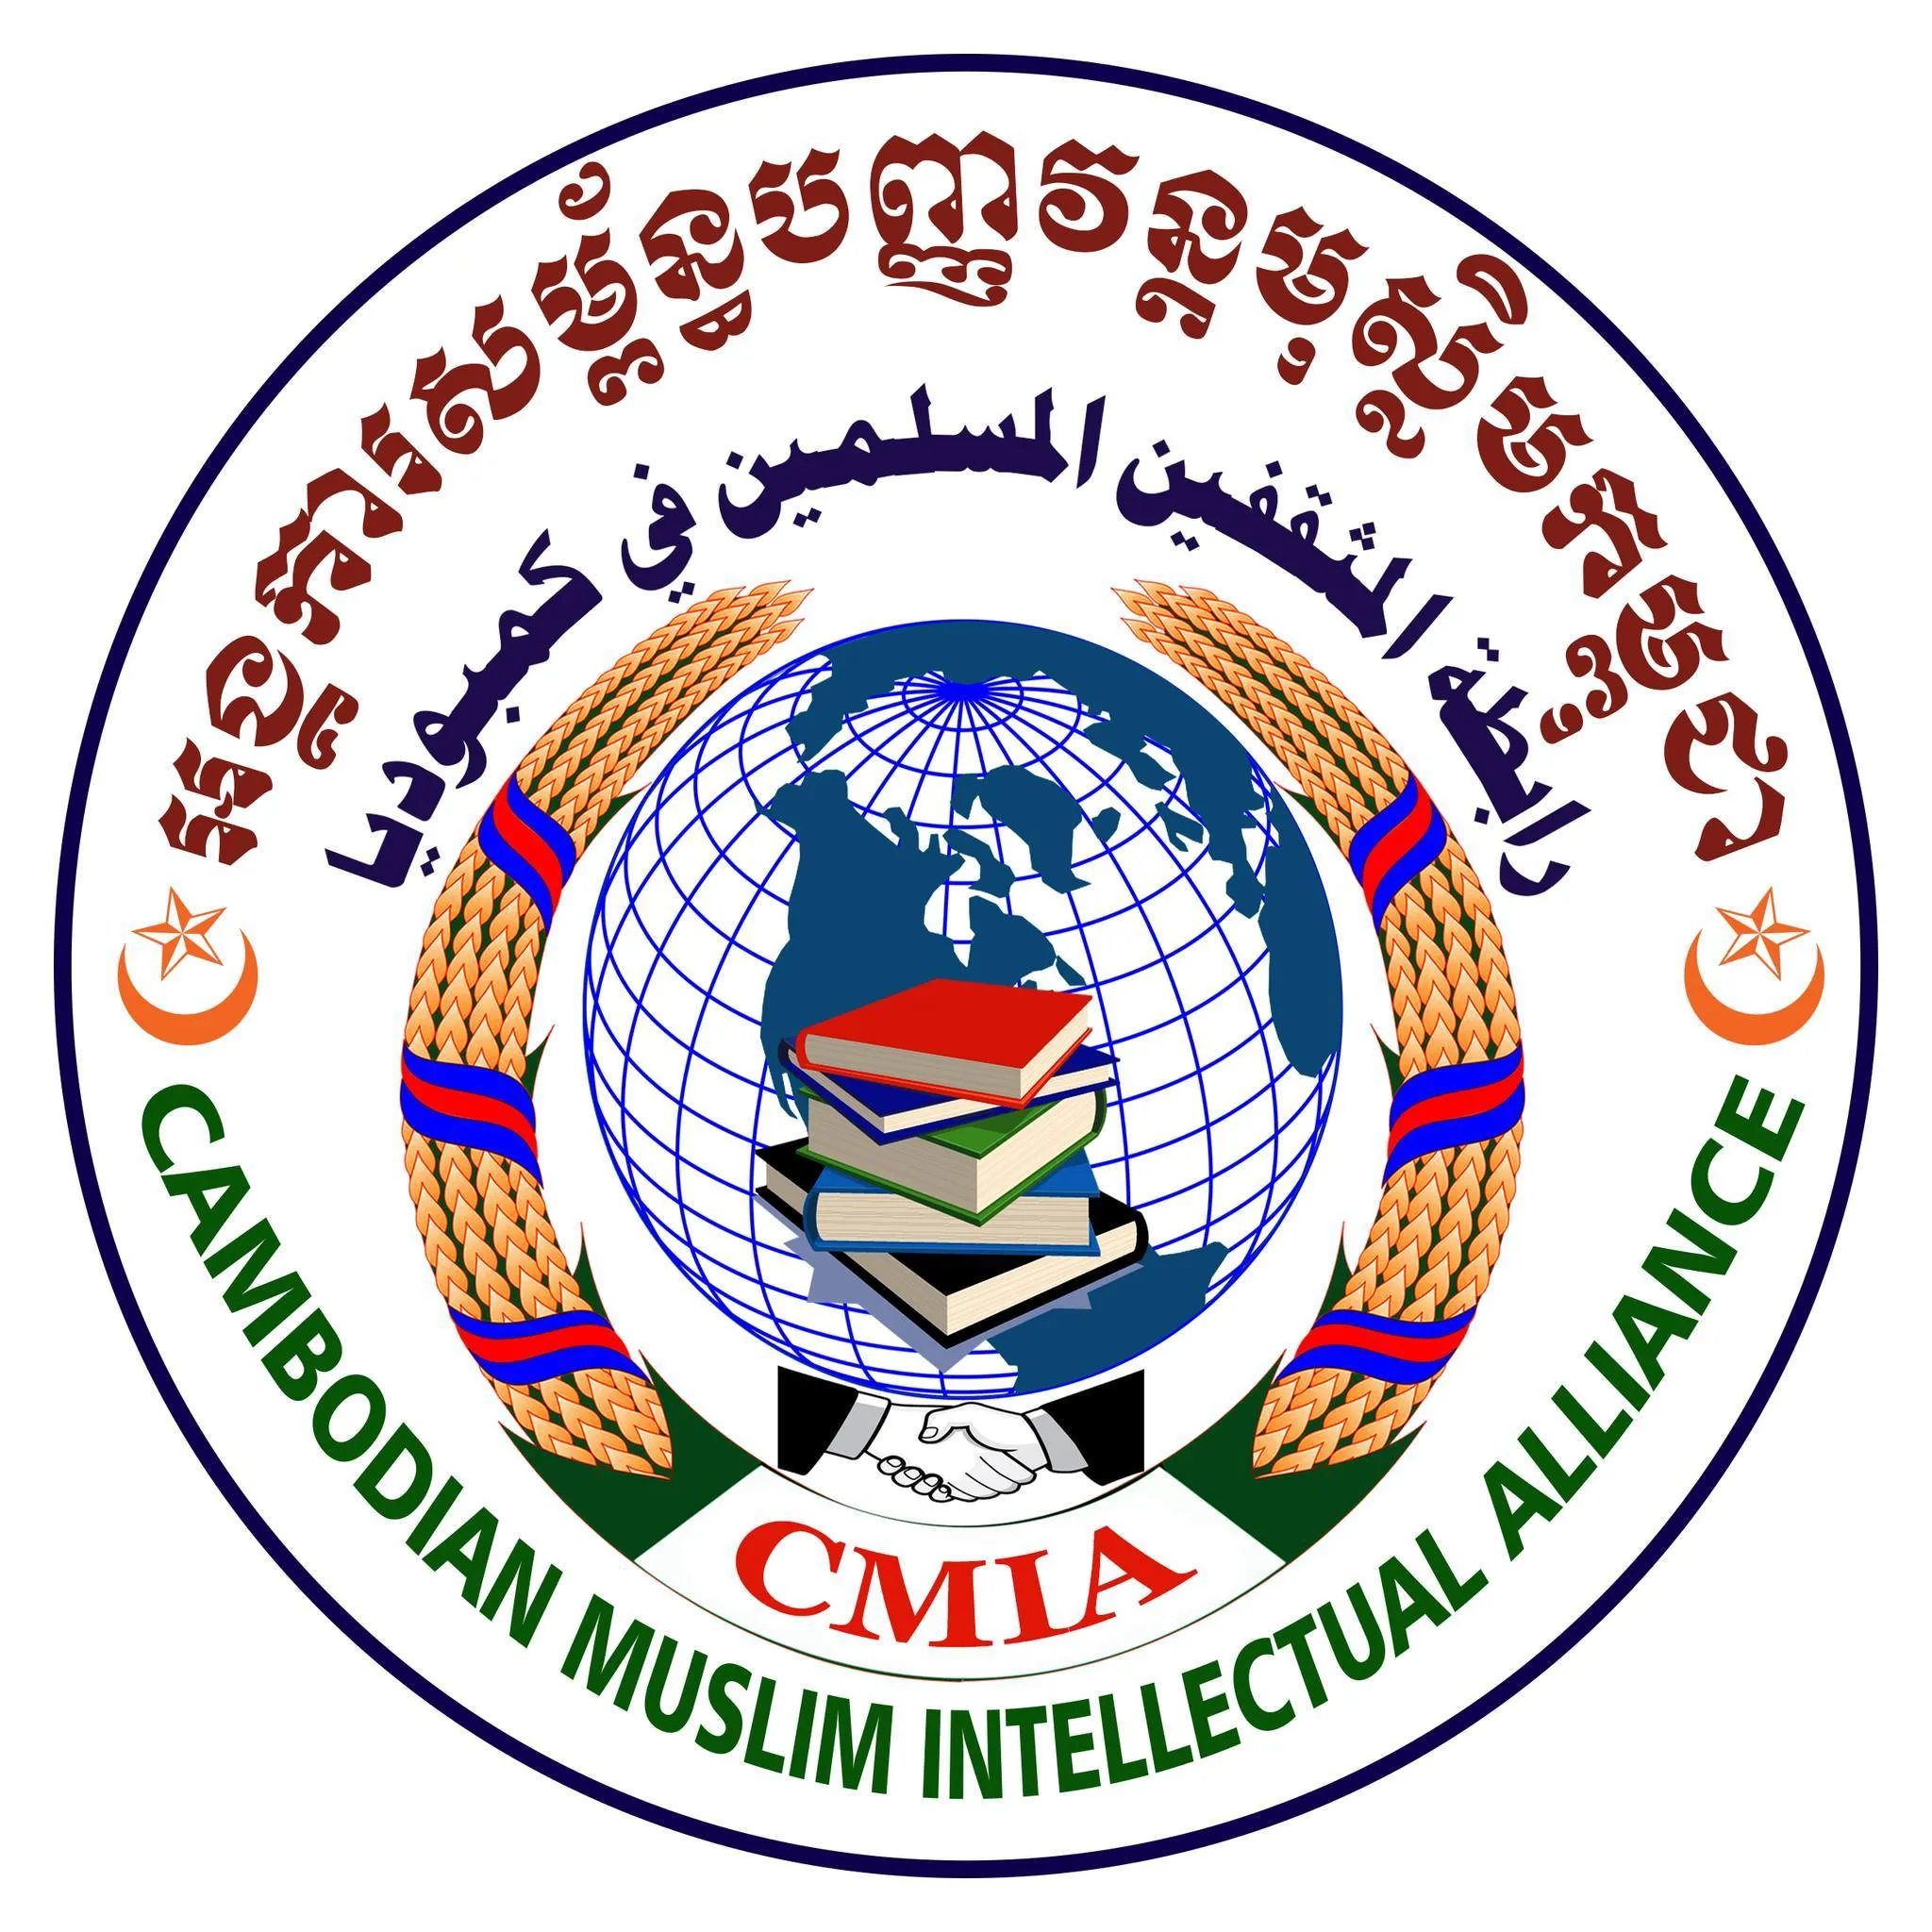 Cambodian Muslim Intellectual Alliance